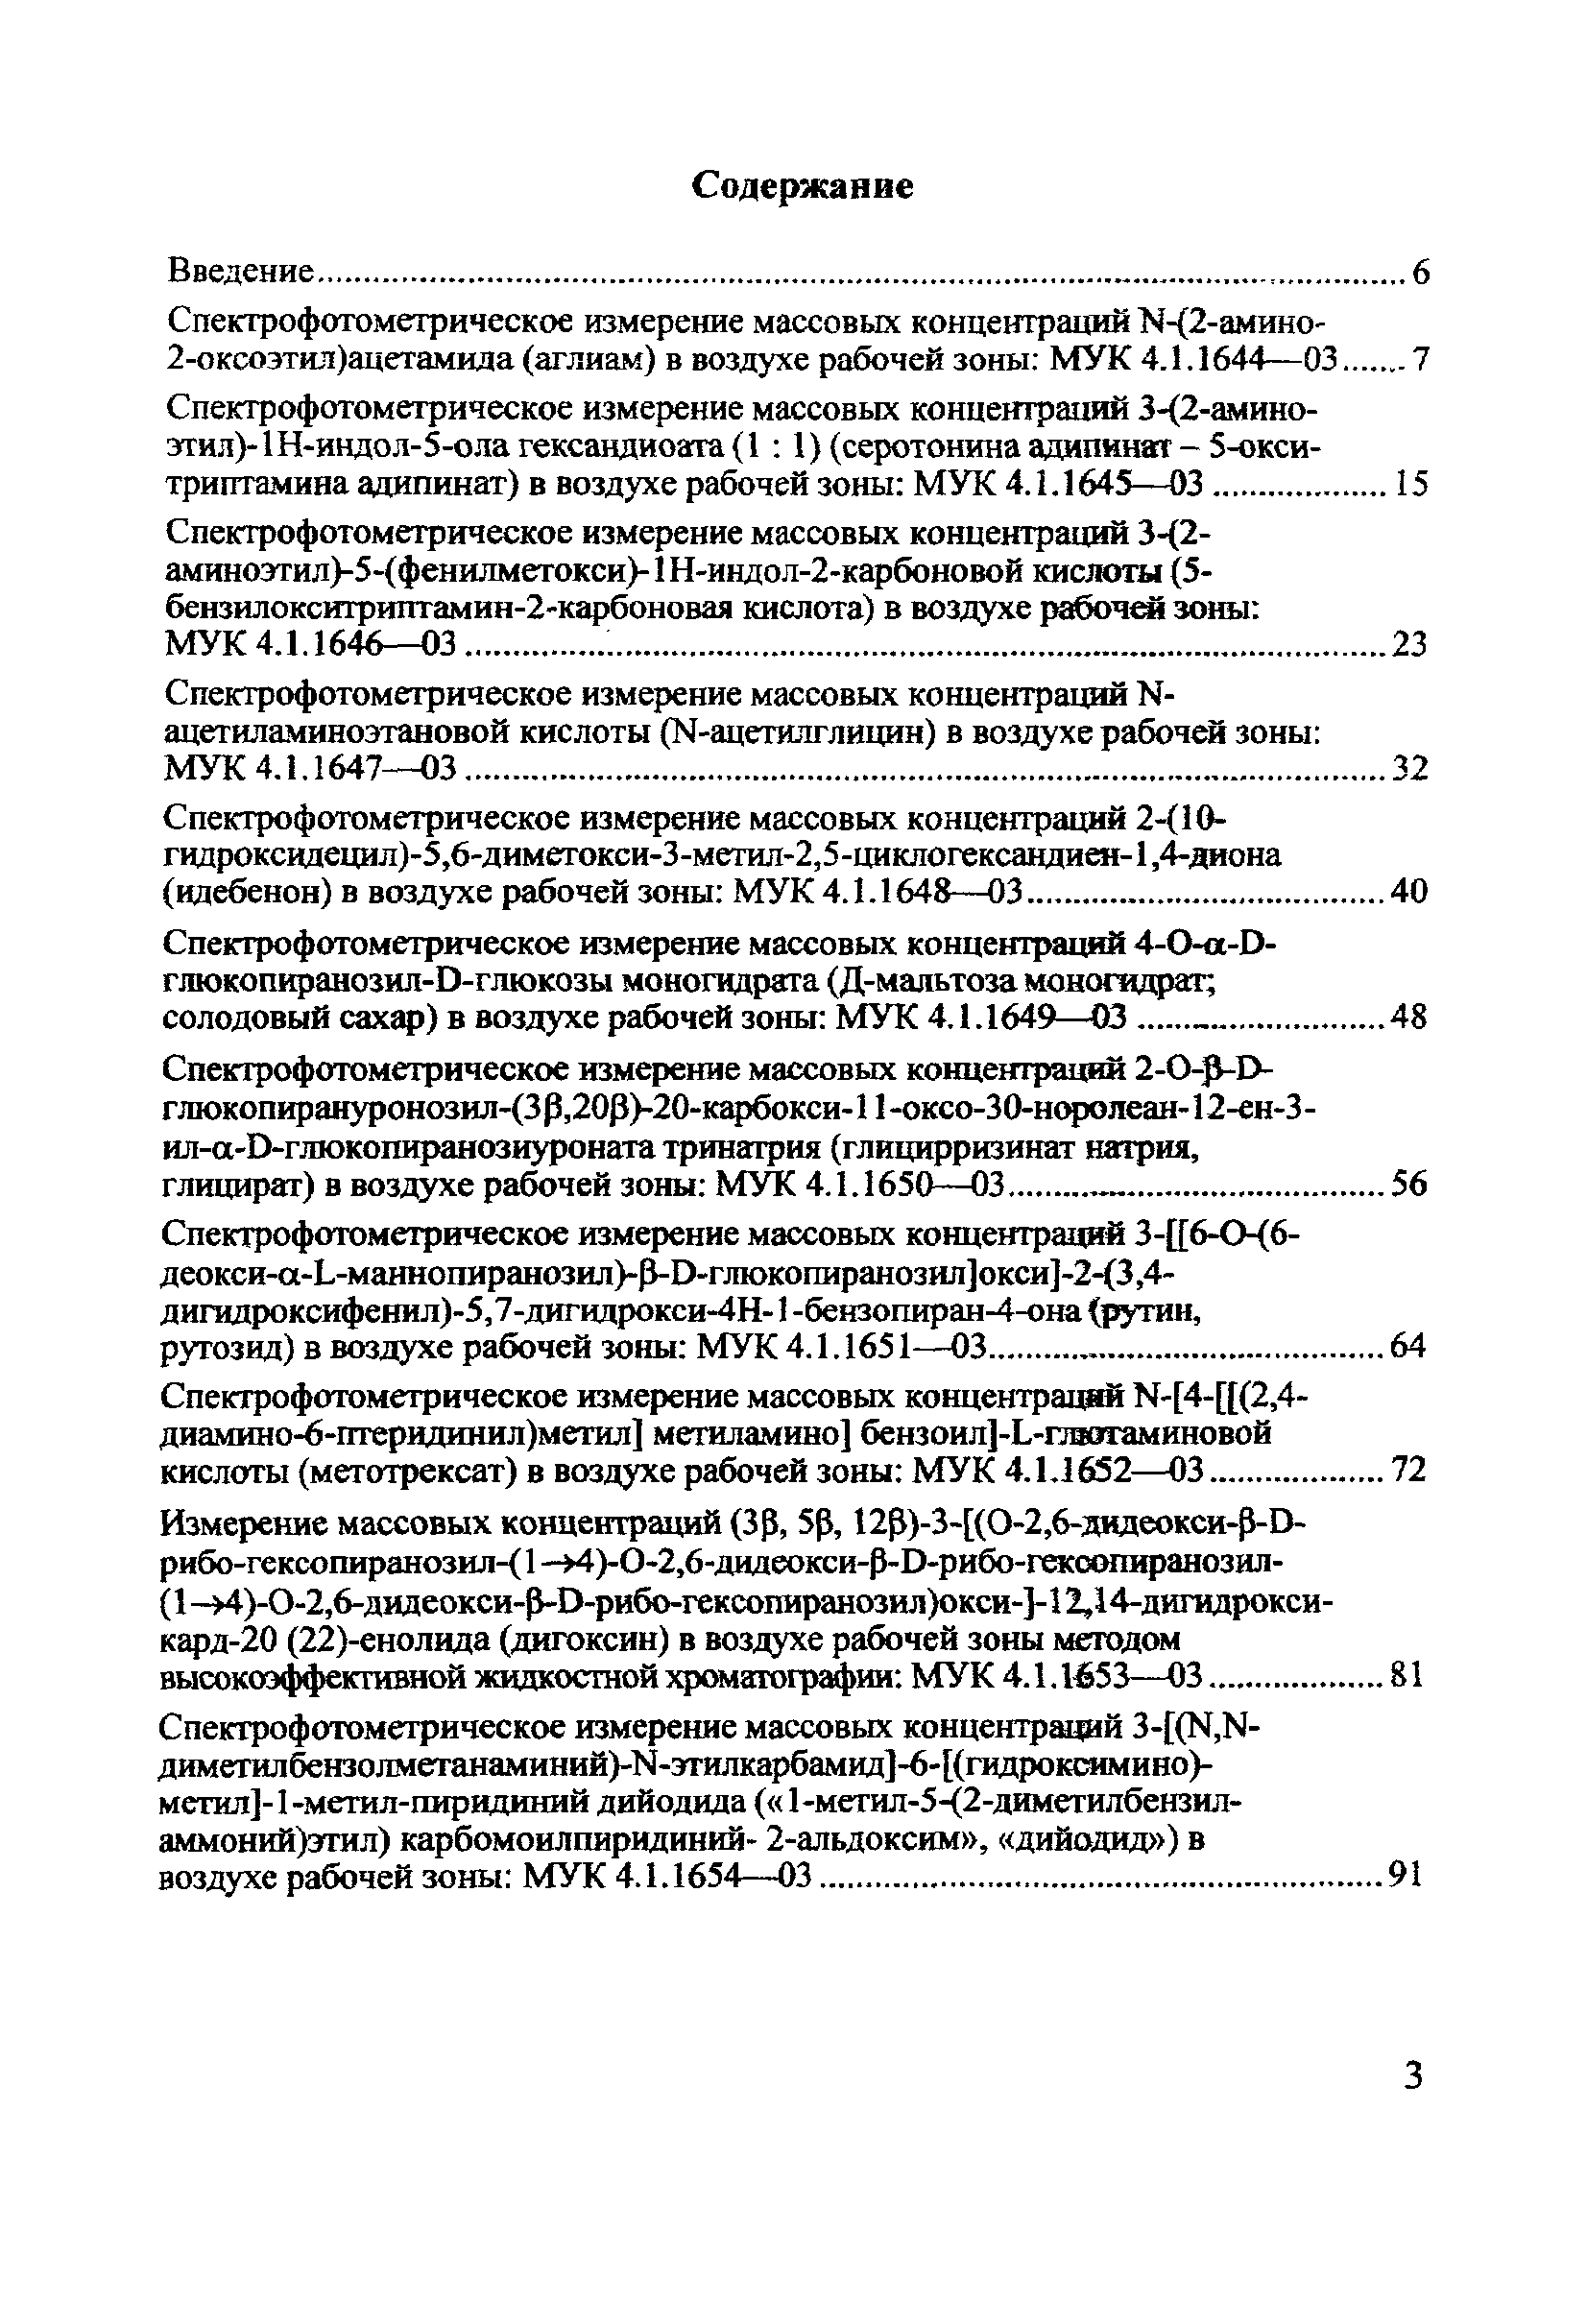 МУК 4.1.1670-03